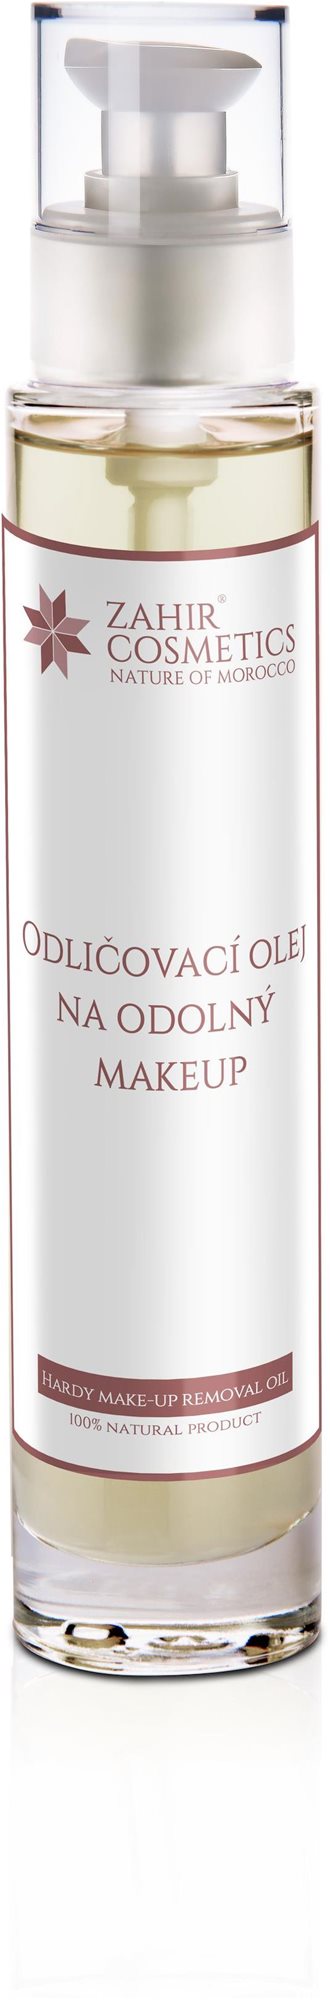 ZÁHIR COSMETICS Odličovací olej na odolný make-up 100 ml